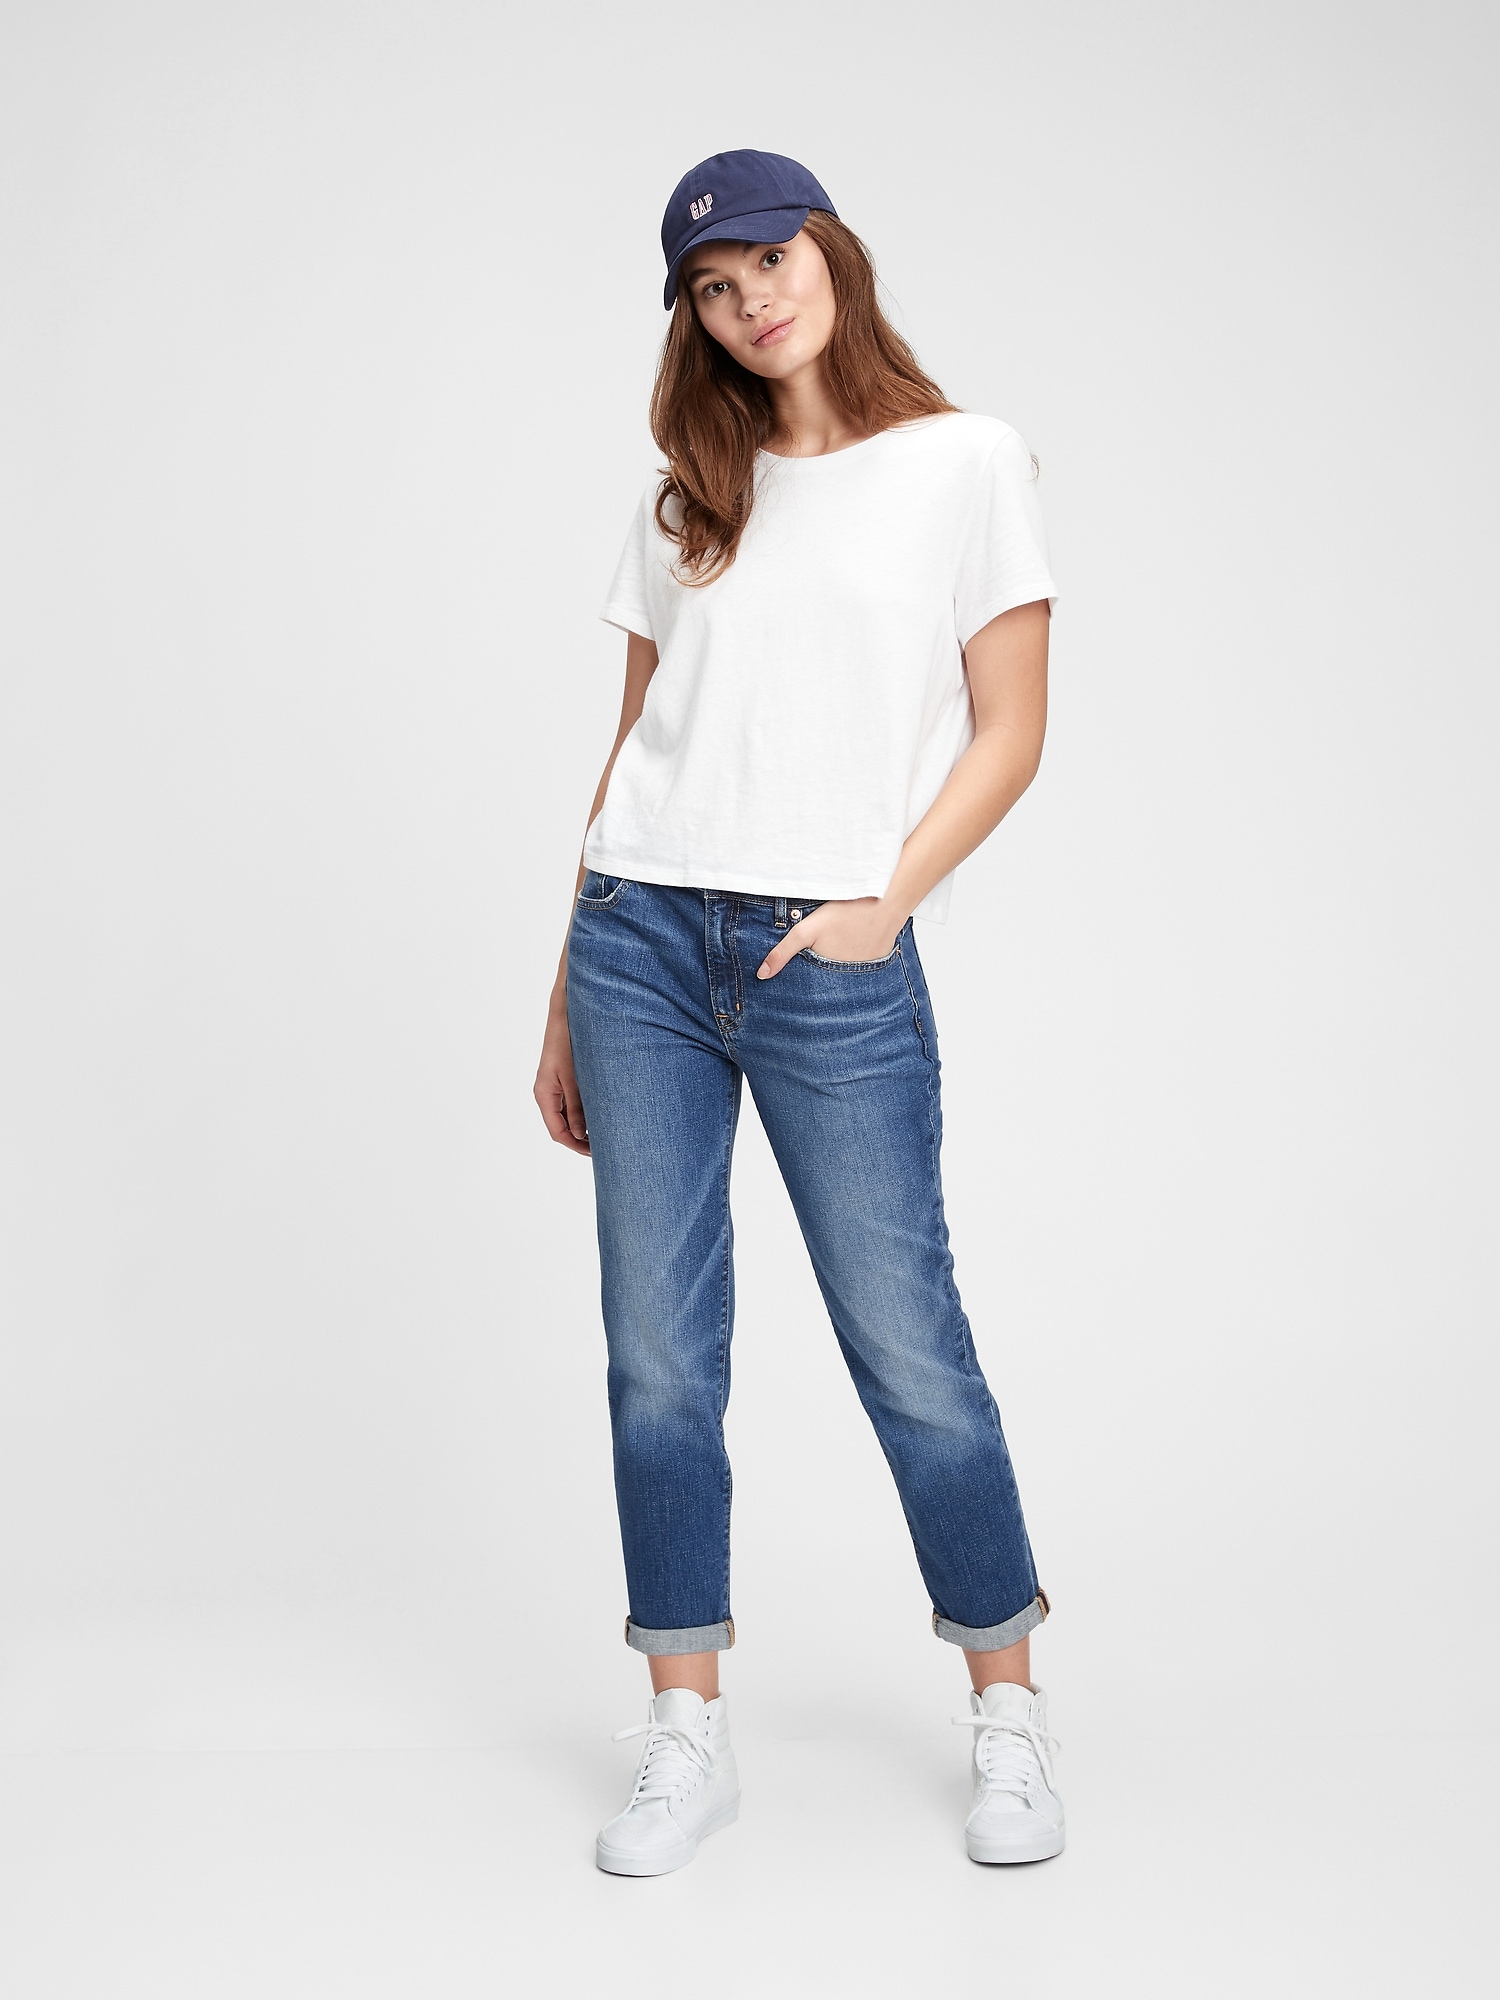 NWT GAP Women's Best Girlfriend Jeans Sz 26-27-28 White or Medium or Dark Wash